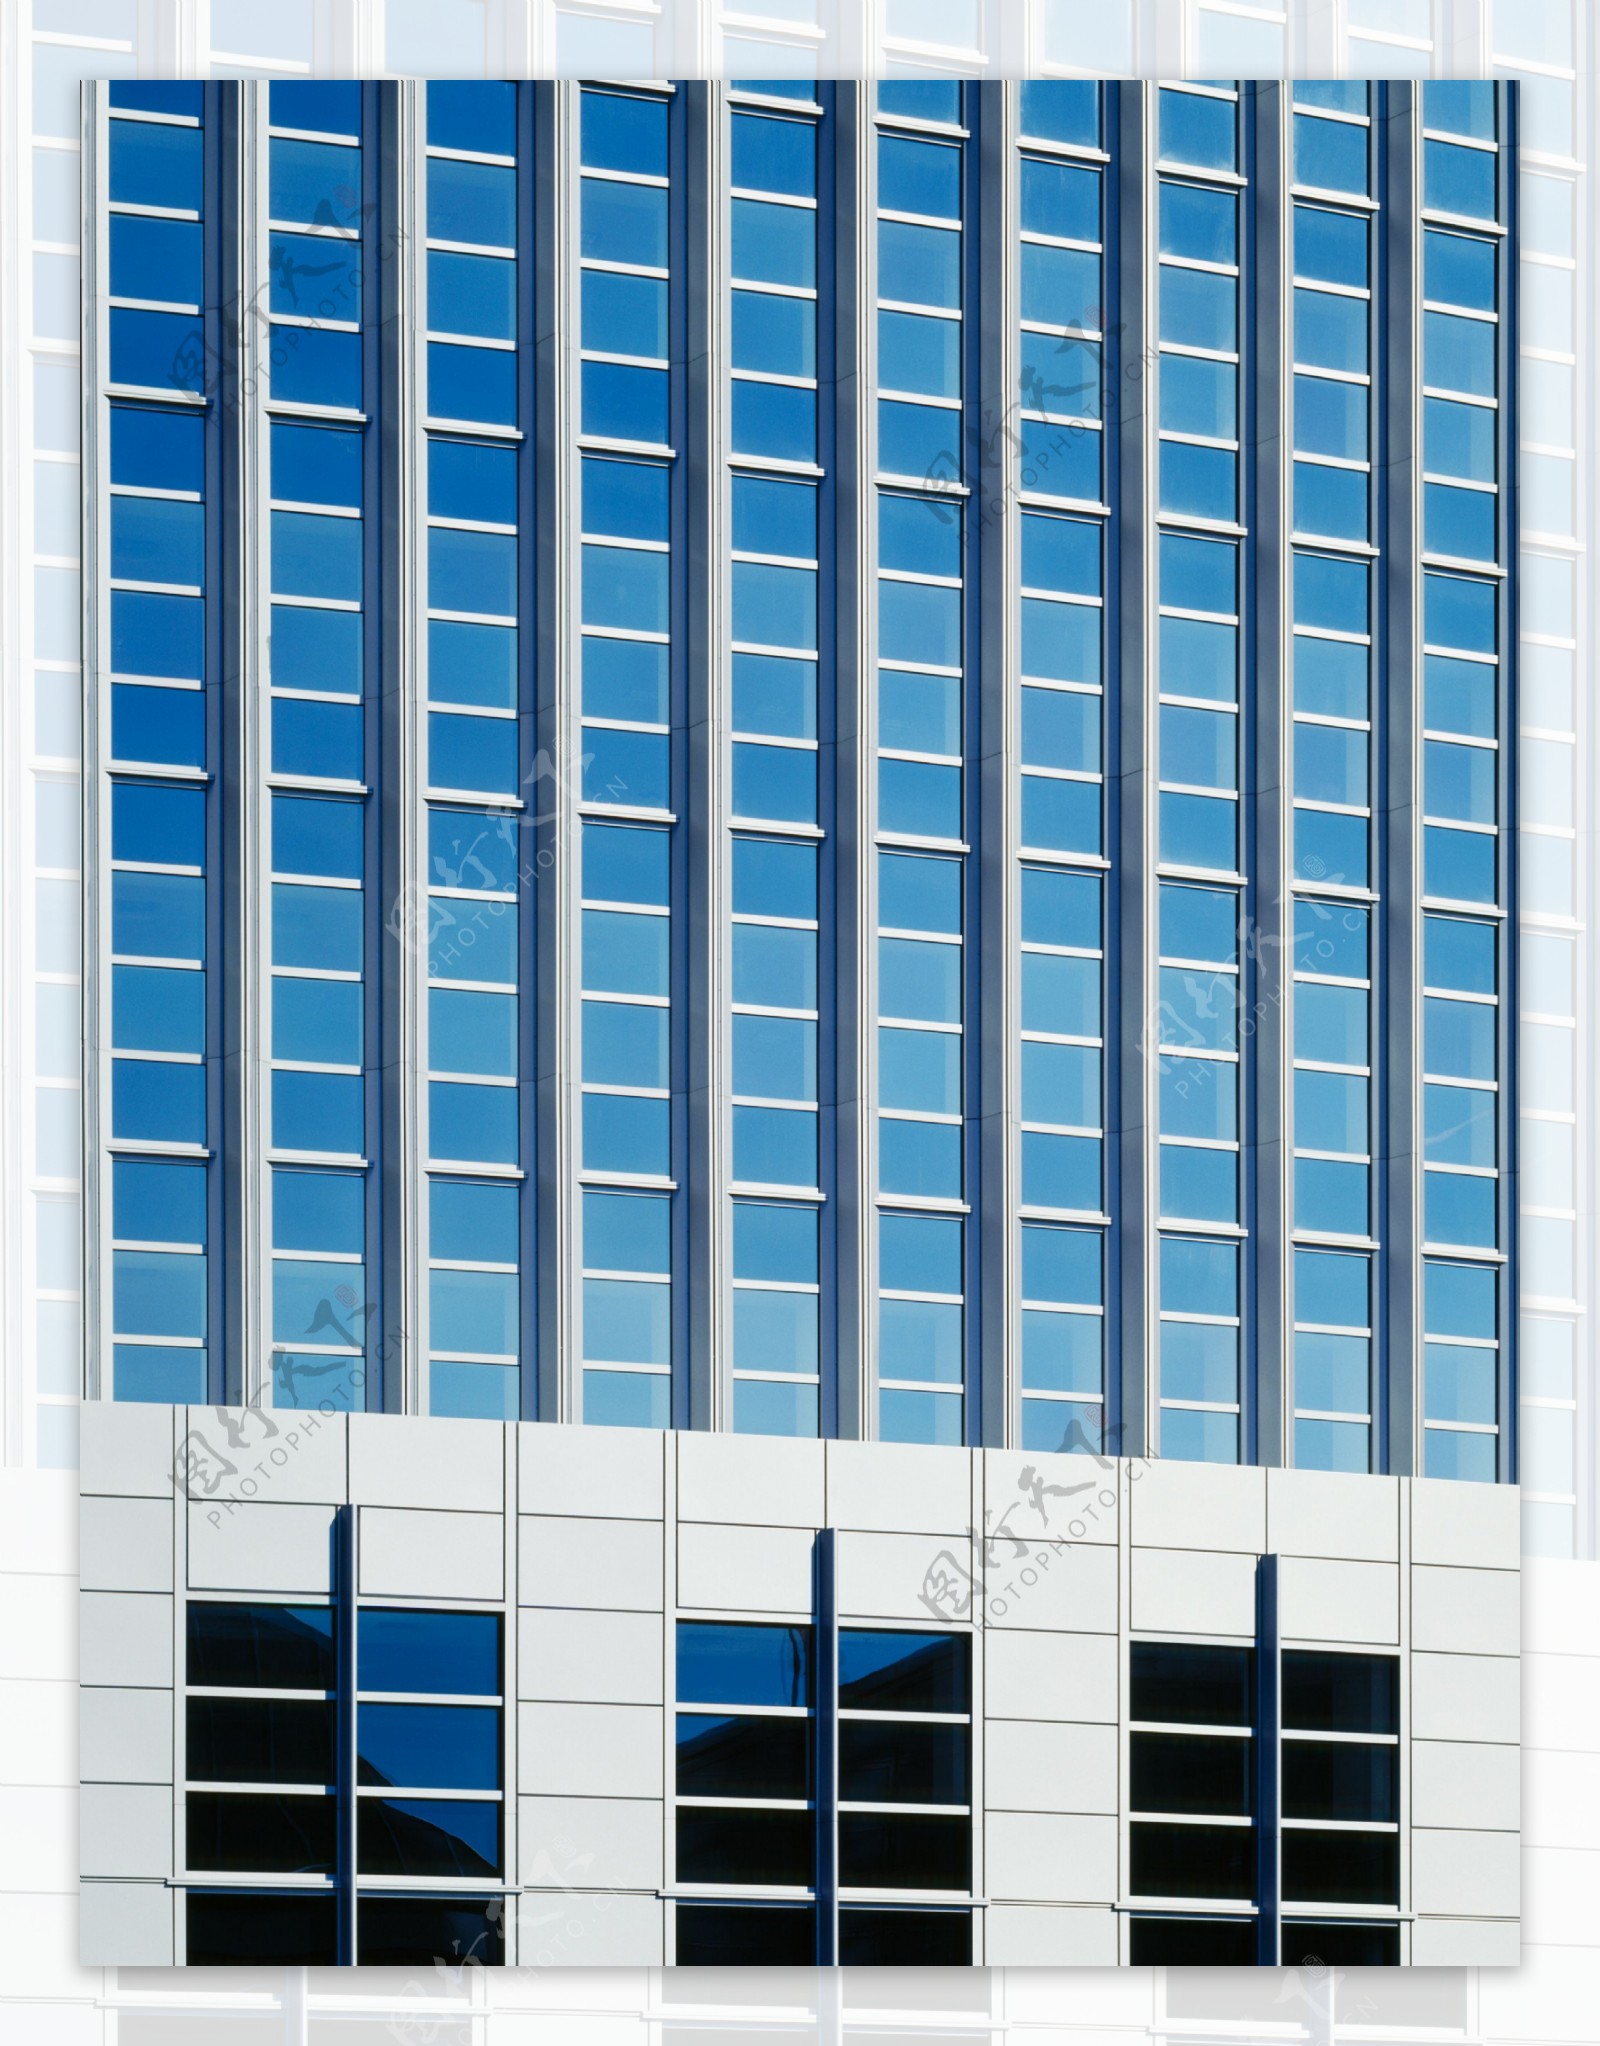 大厦建筑效果图53图片